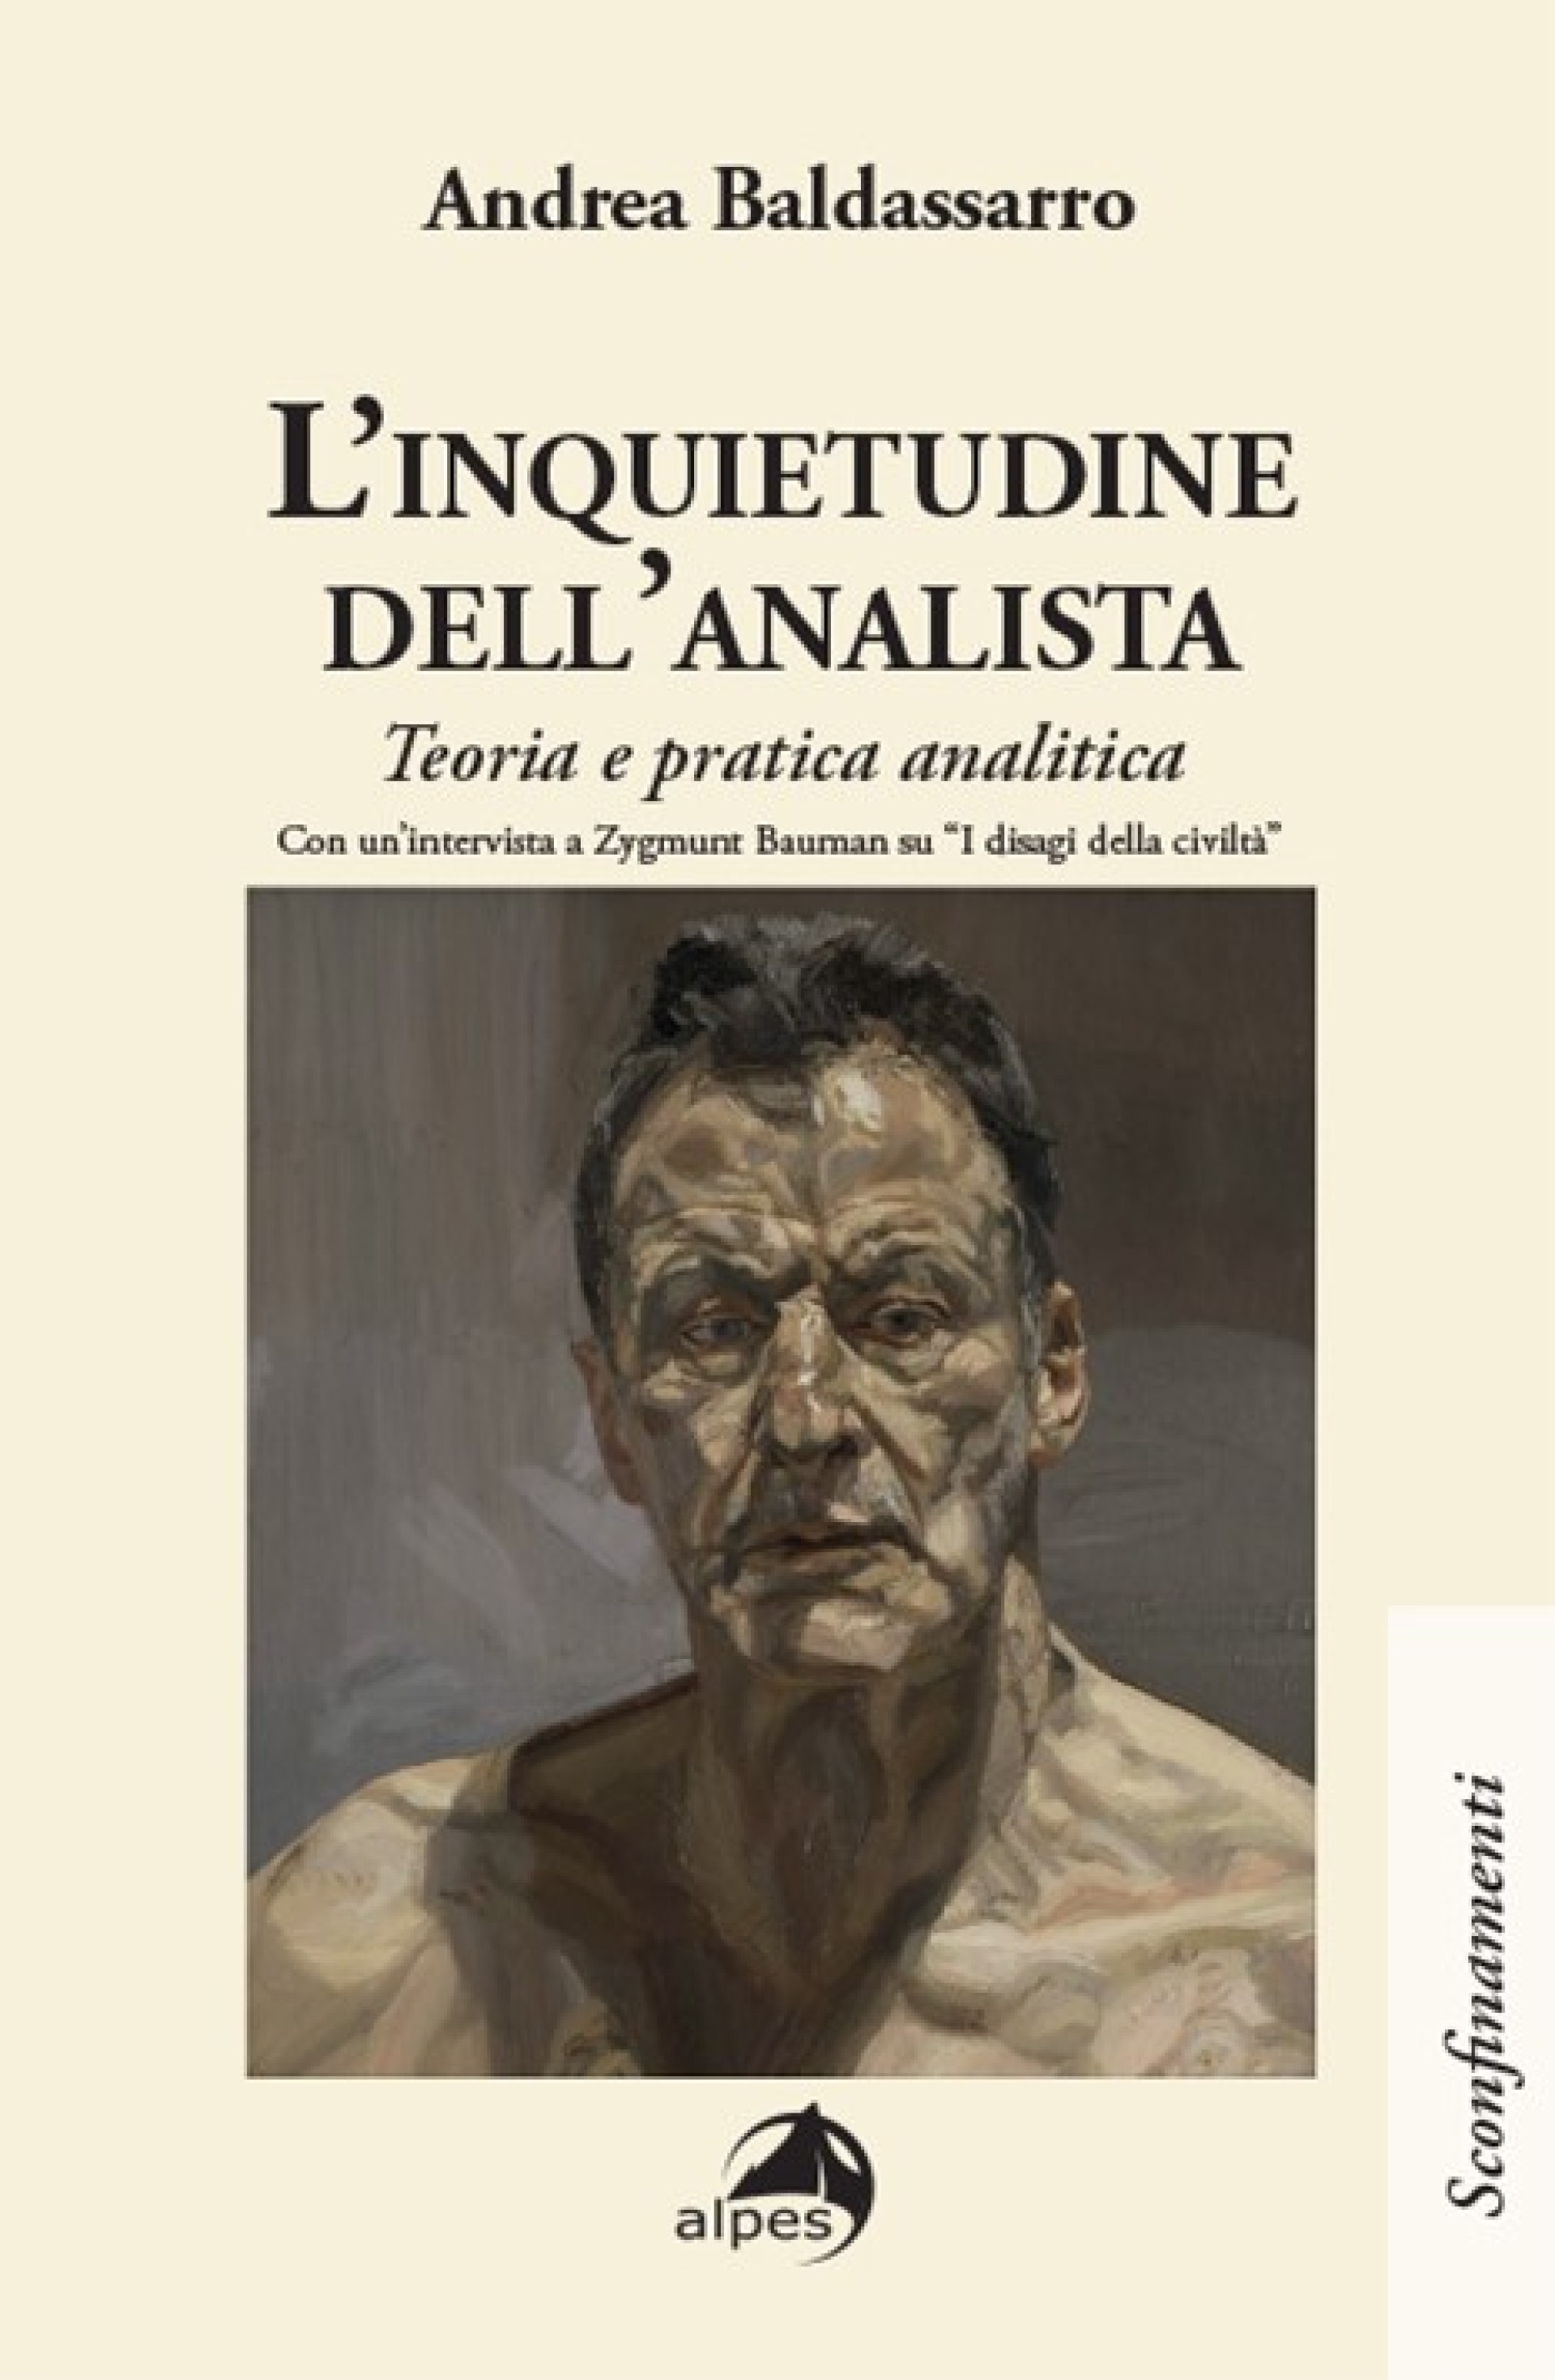 L'INQUIETUDINE DELL'ANALISTA di Andrea Baldassarro - Alpes ed.